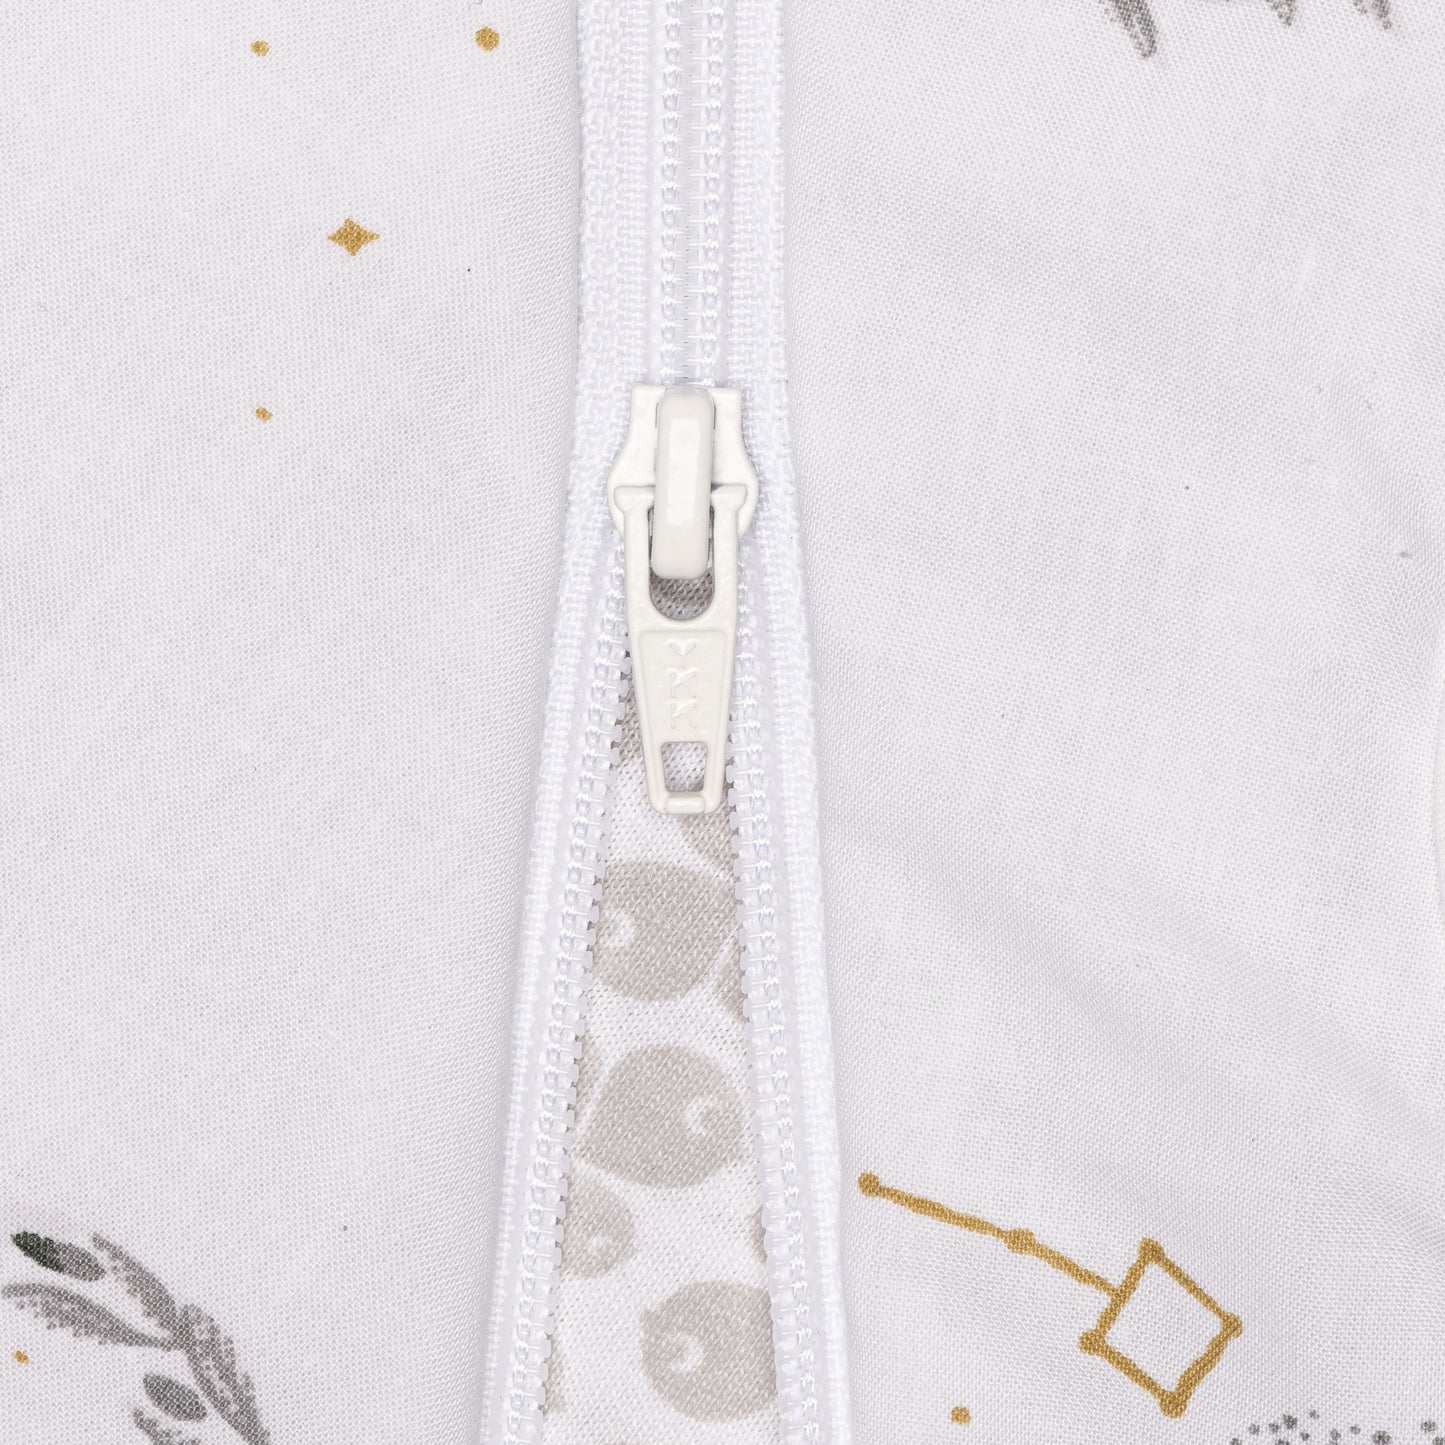 Woven cotton sleep sack - Moonlight (2.0 togs)